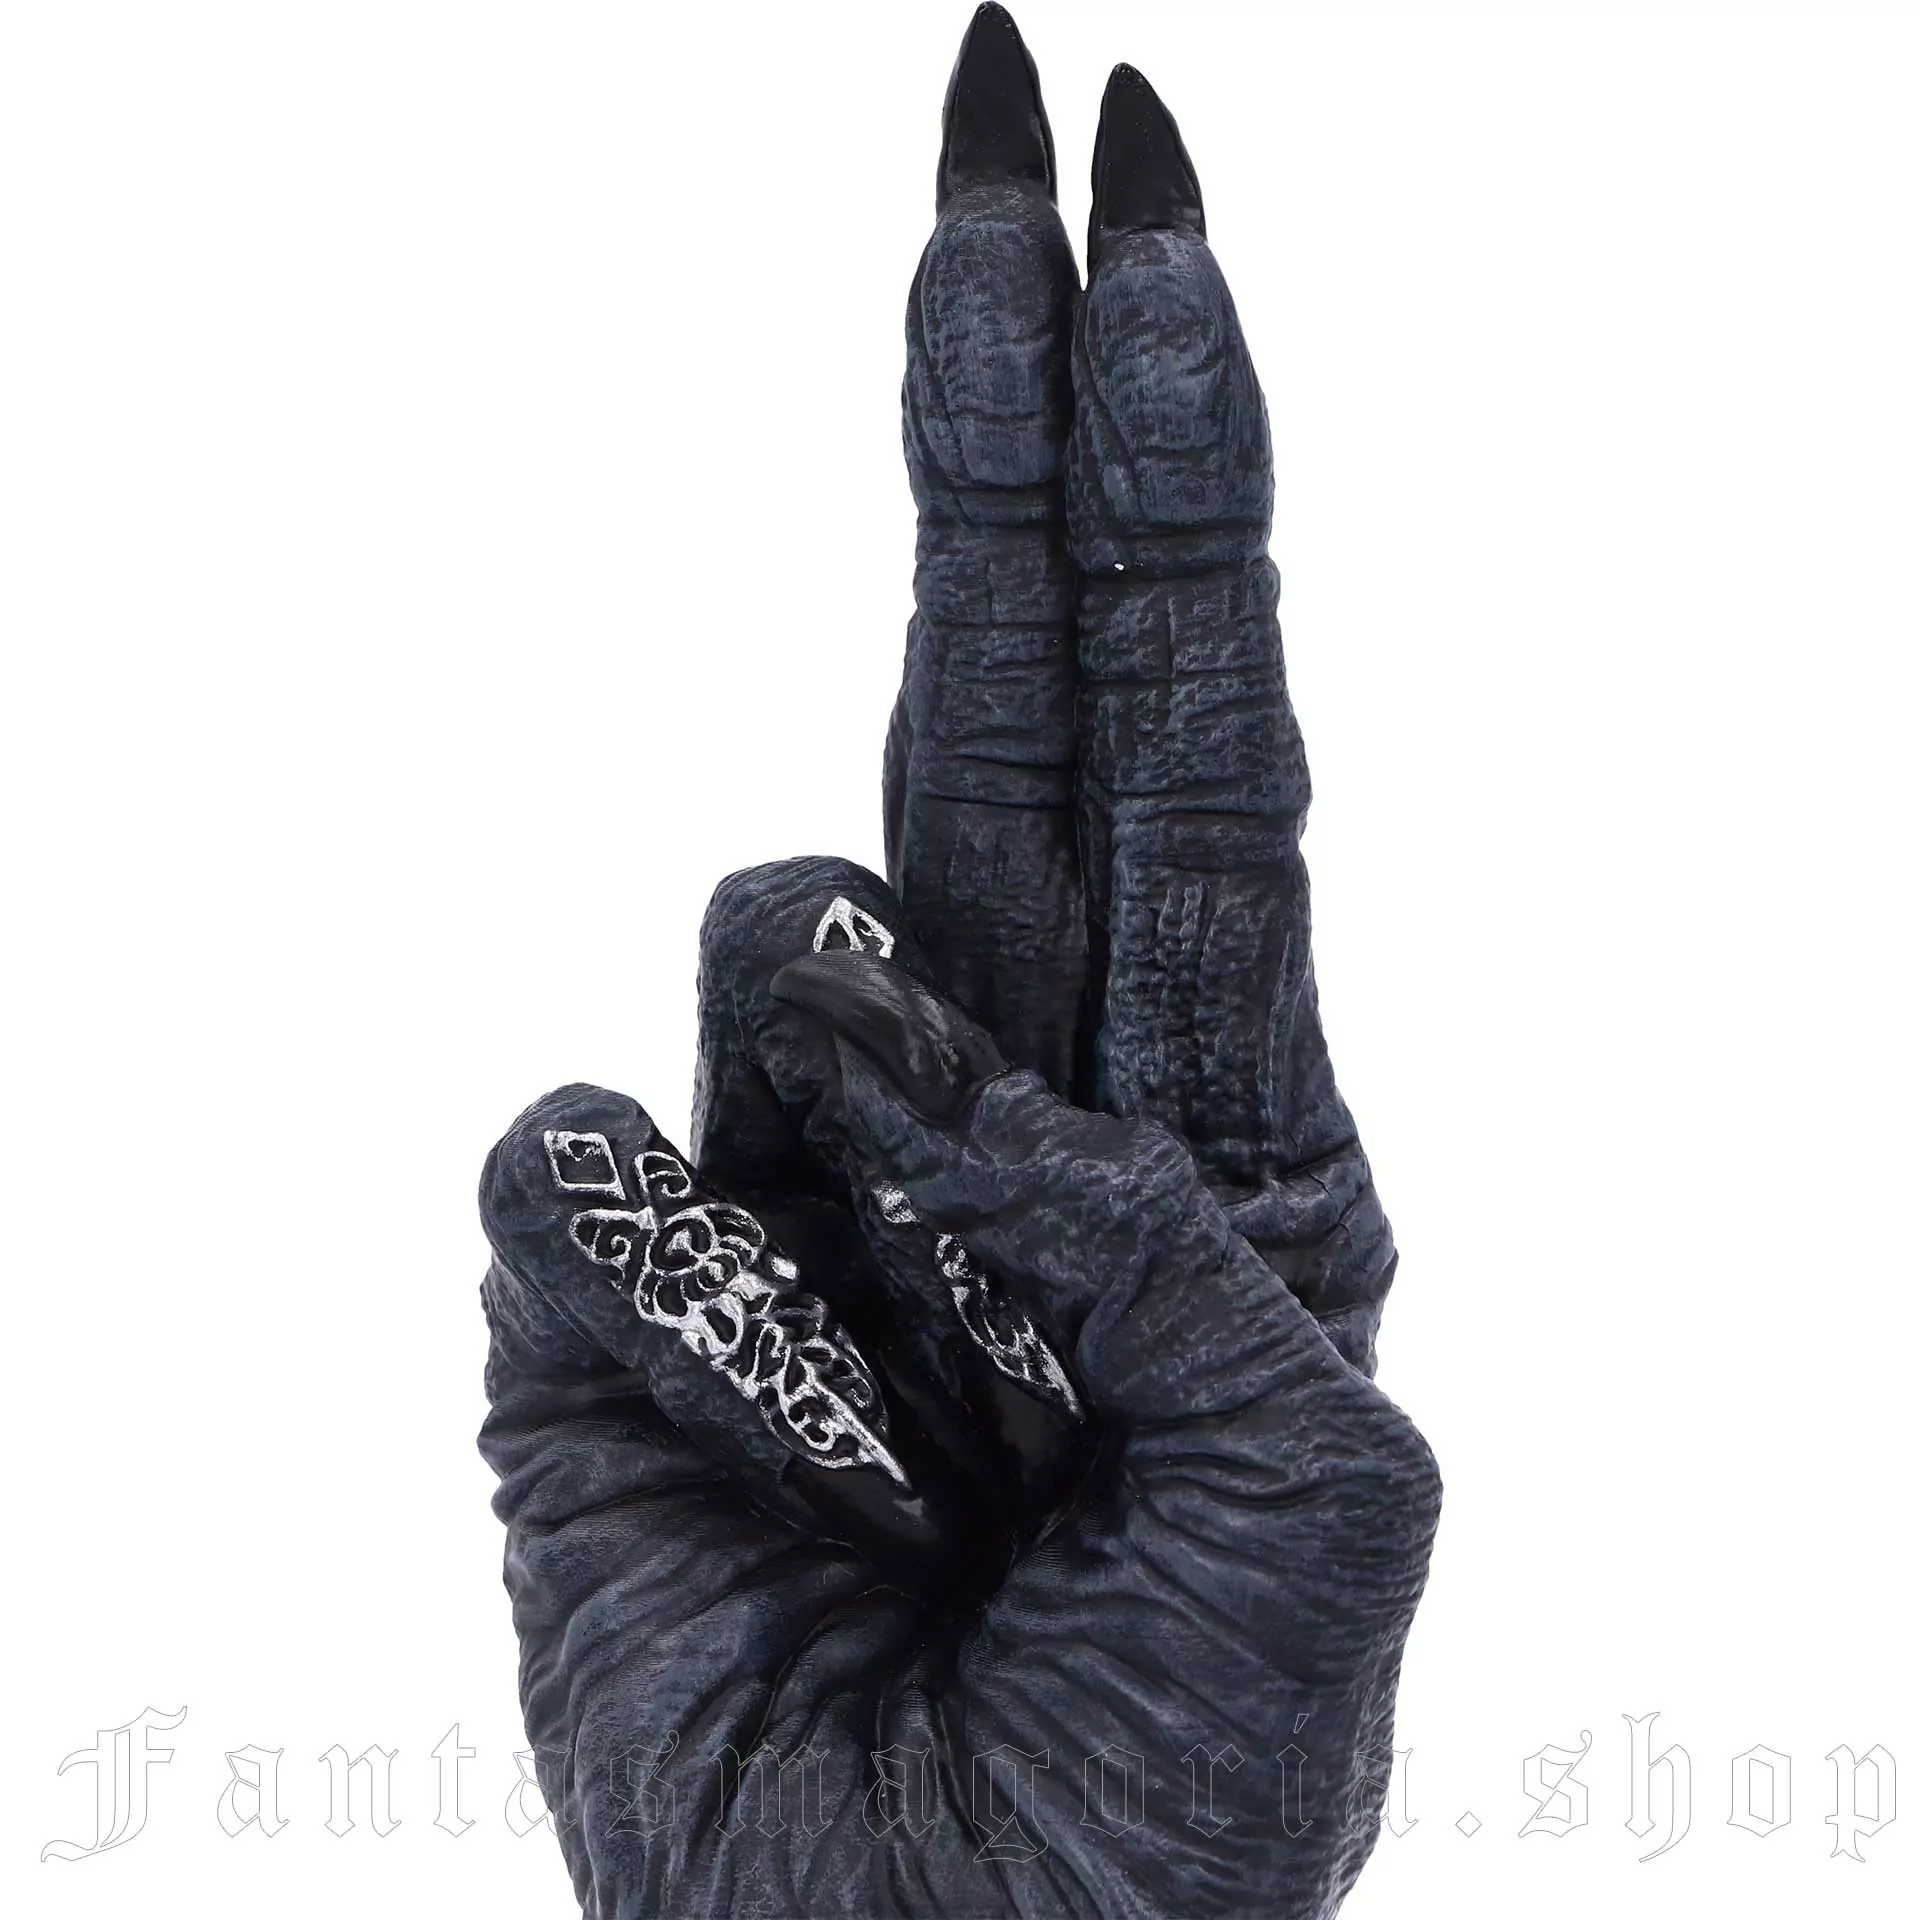 Nemesis Now Baphomet Devil Satanic Gothic Hand Sculpture Desk Ornament  B5159R0